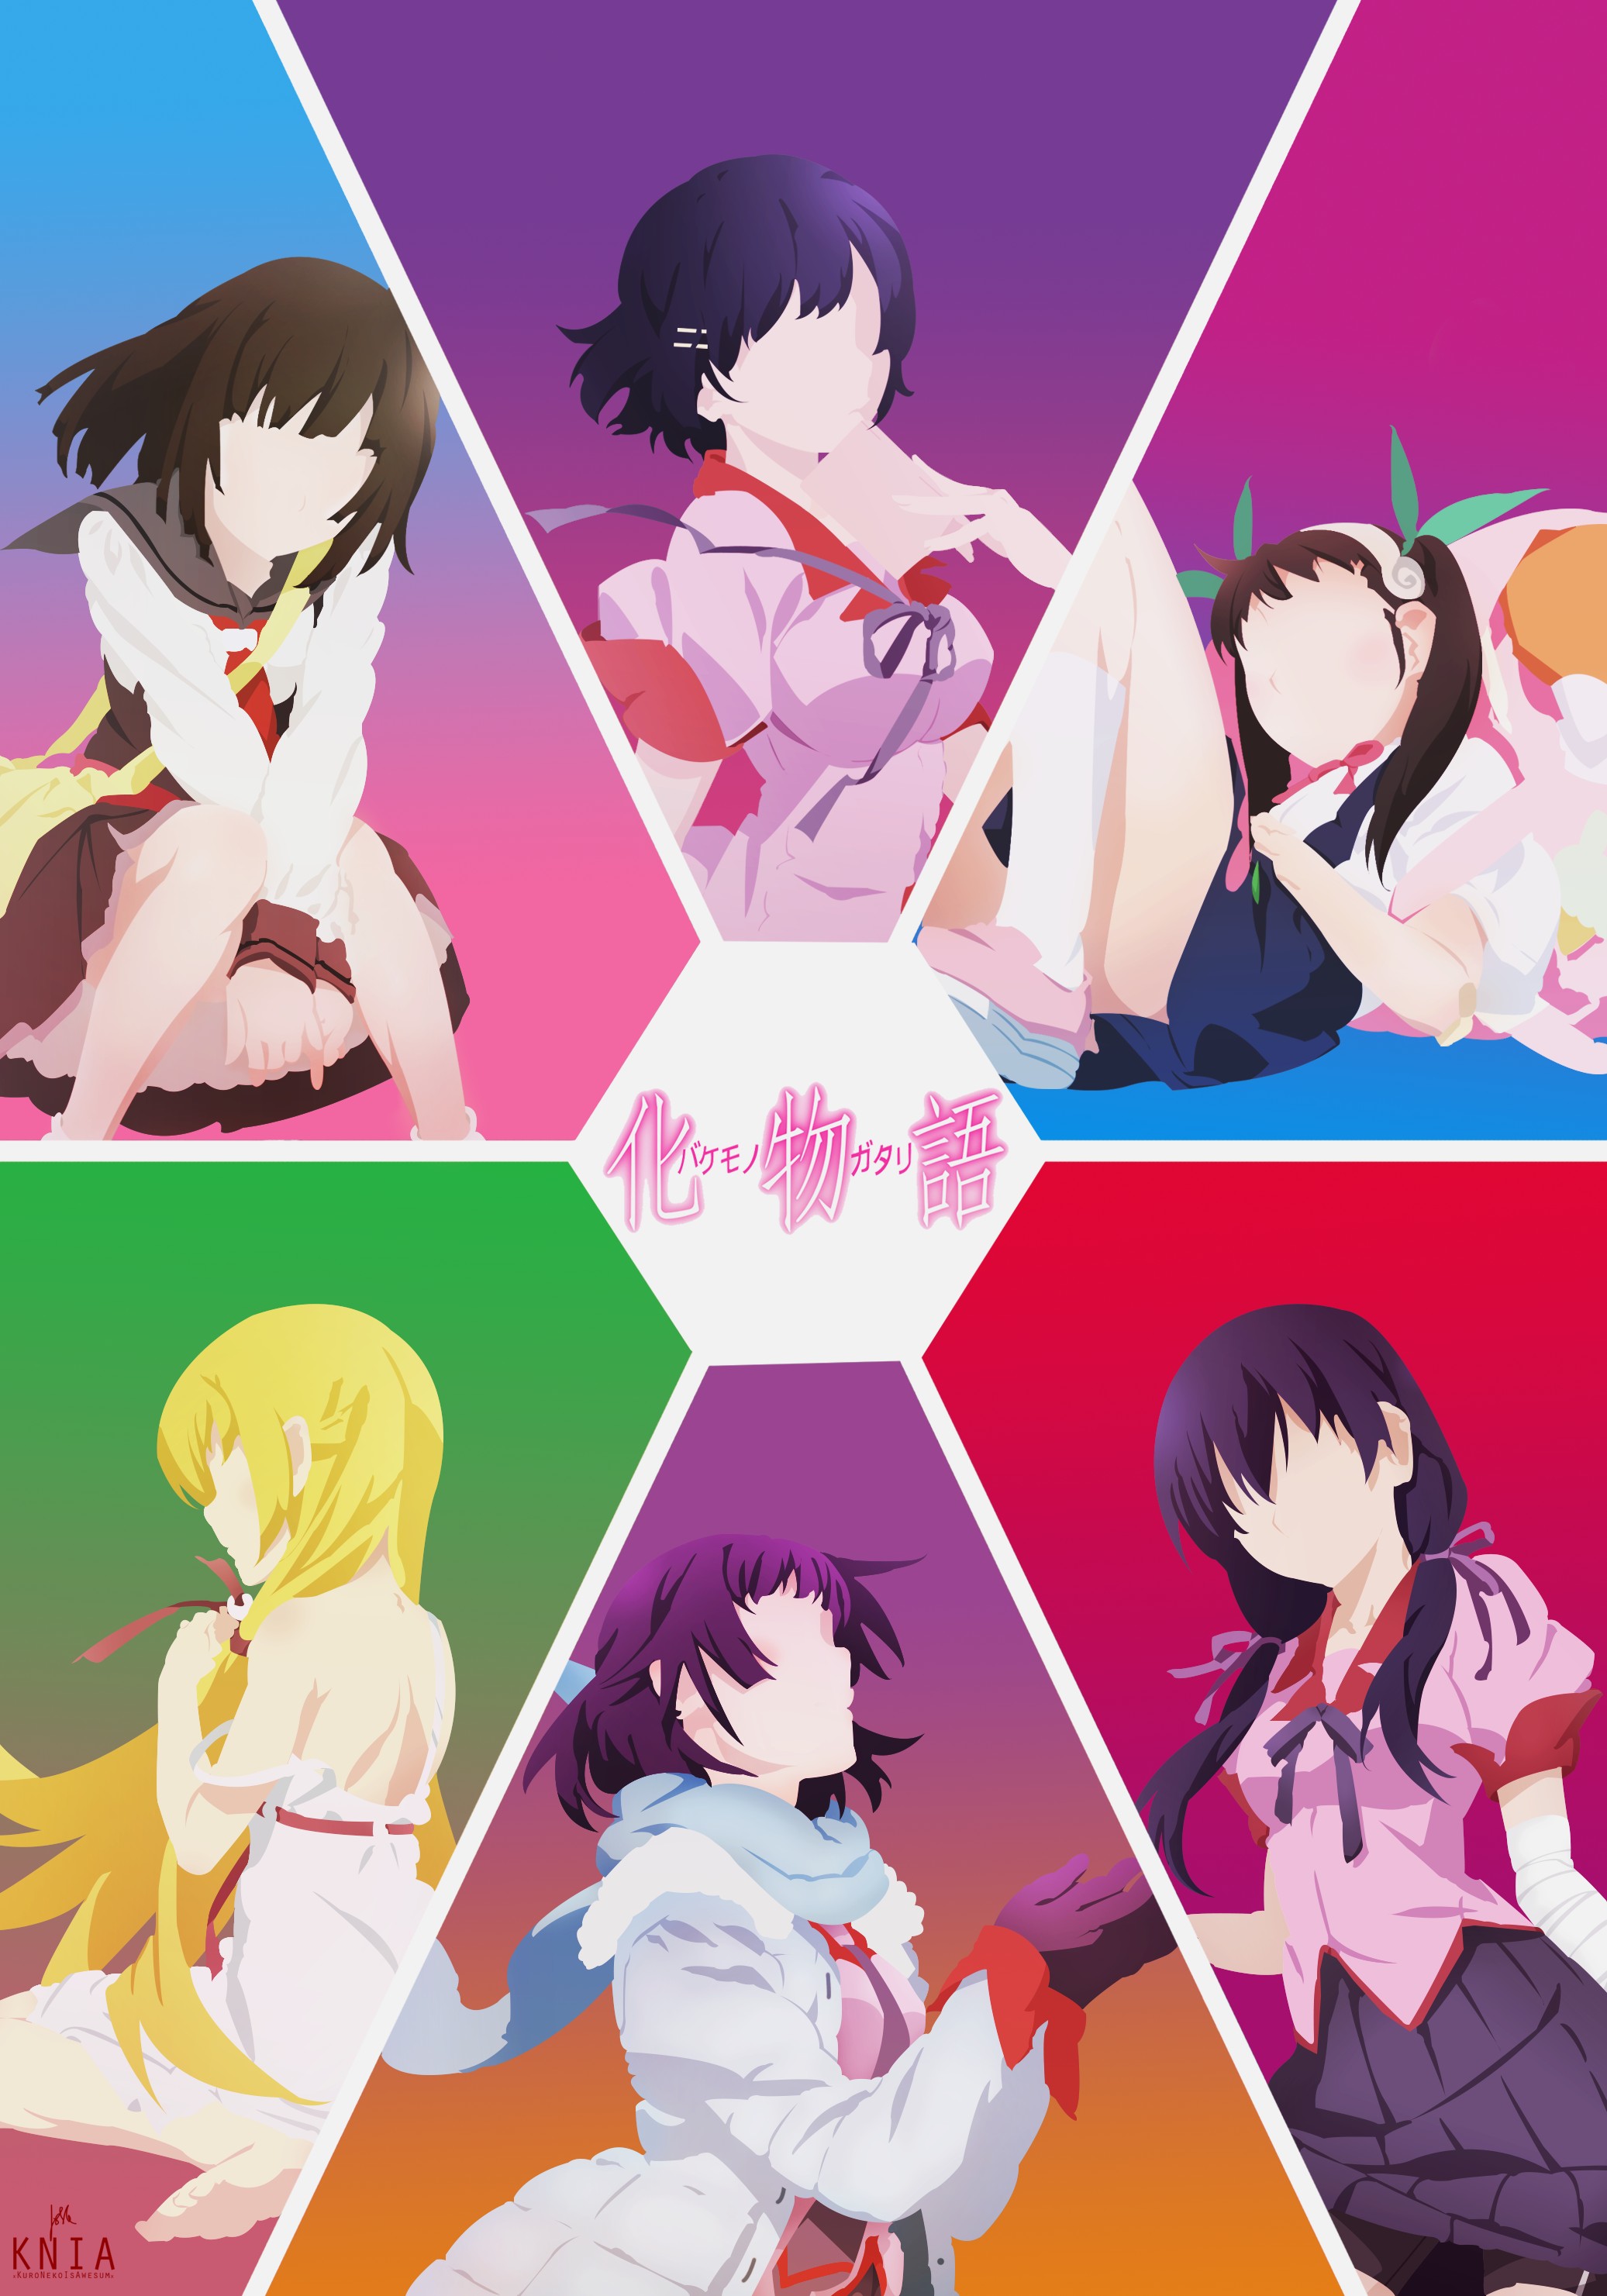 Monogatari Series, Anime girls, Hachikuji Mayoi, Oshino Shinobu, Hanekawa  Tsubasa, Senjougahara Hitagi, Kanbaru Suruga, Sengoku Nadeko HD Wallpapers  / Desktop and Mobile Images & Photos